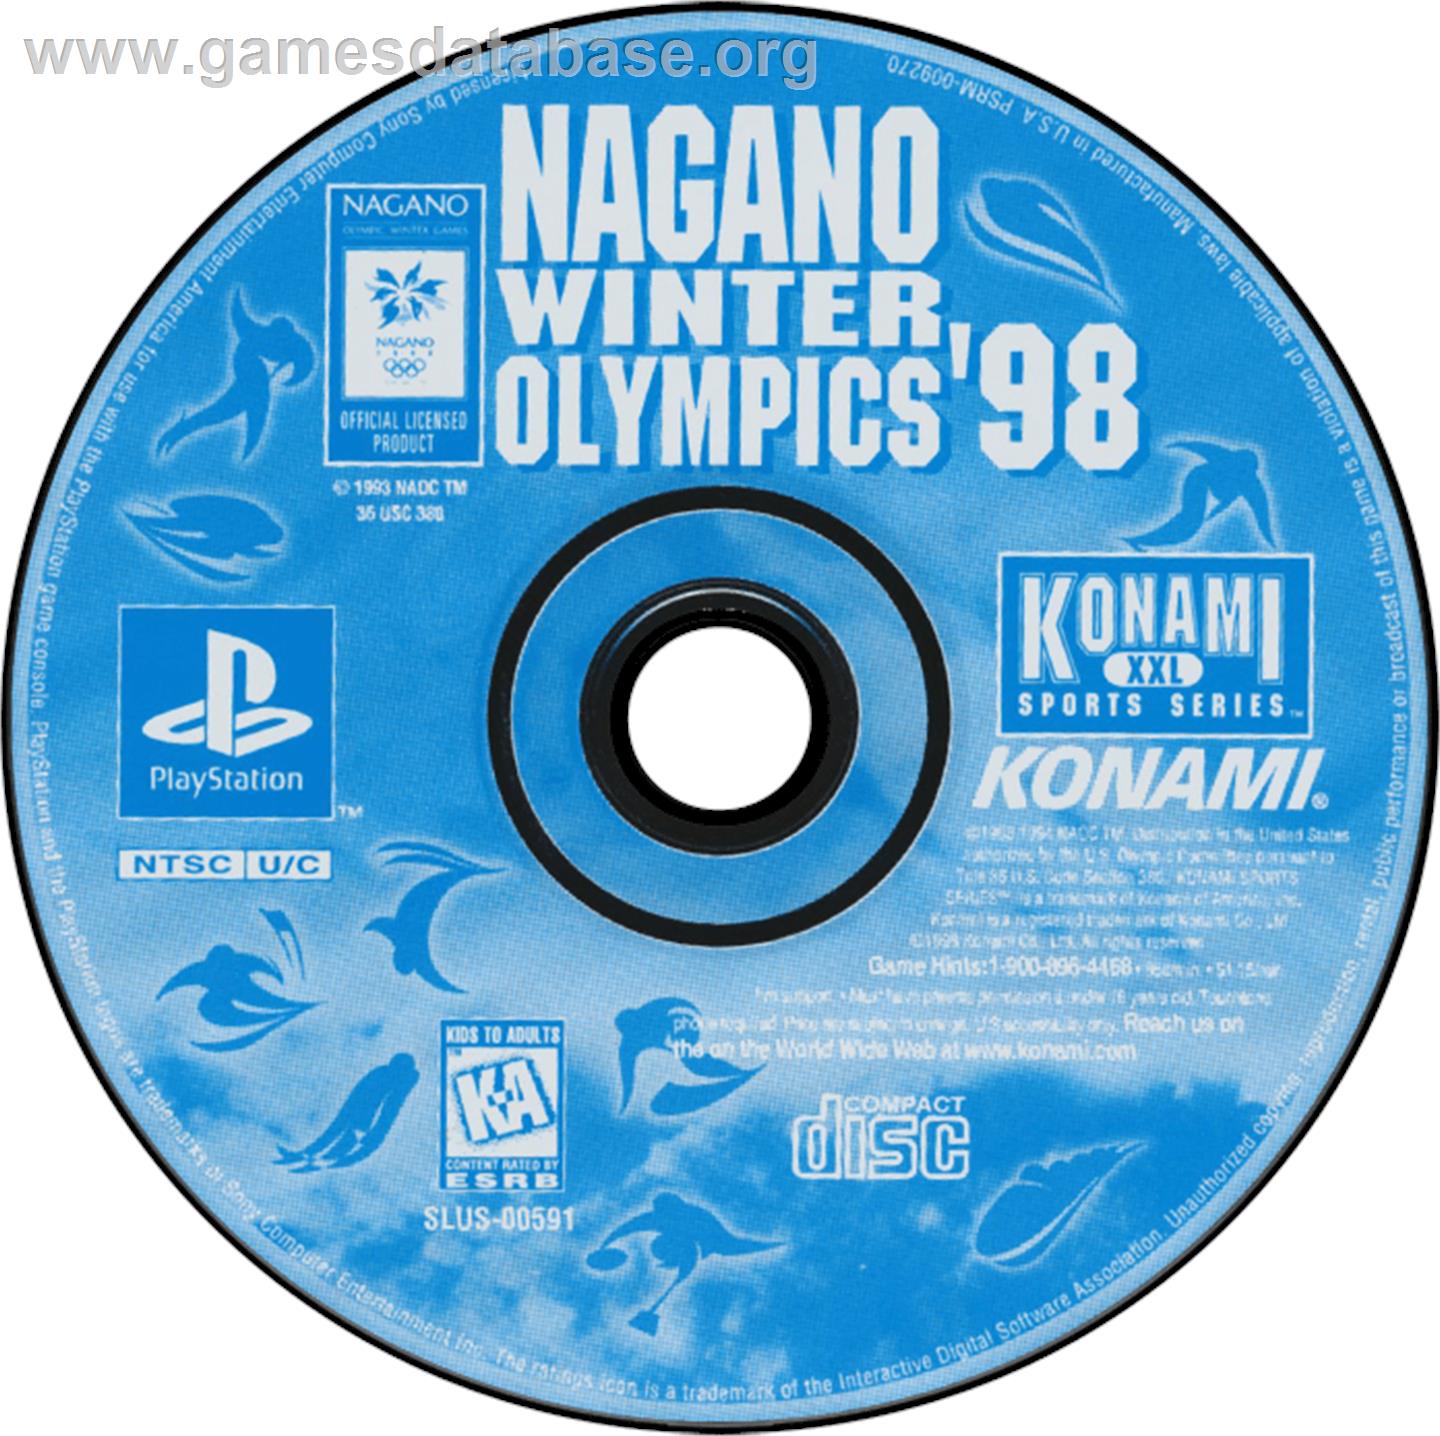 Nagano Winter Olympics '98 - Sony Playstation - Artwork - Disc